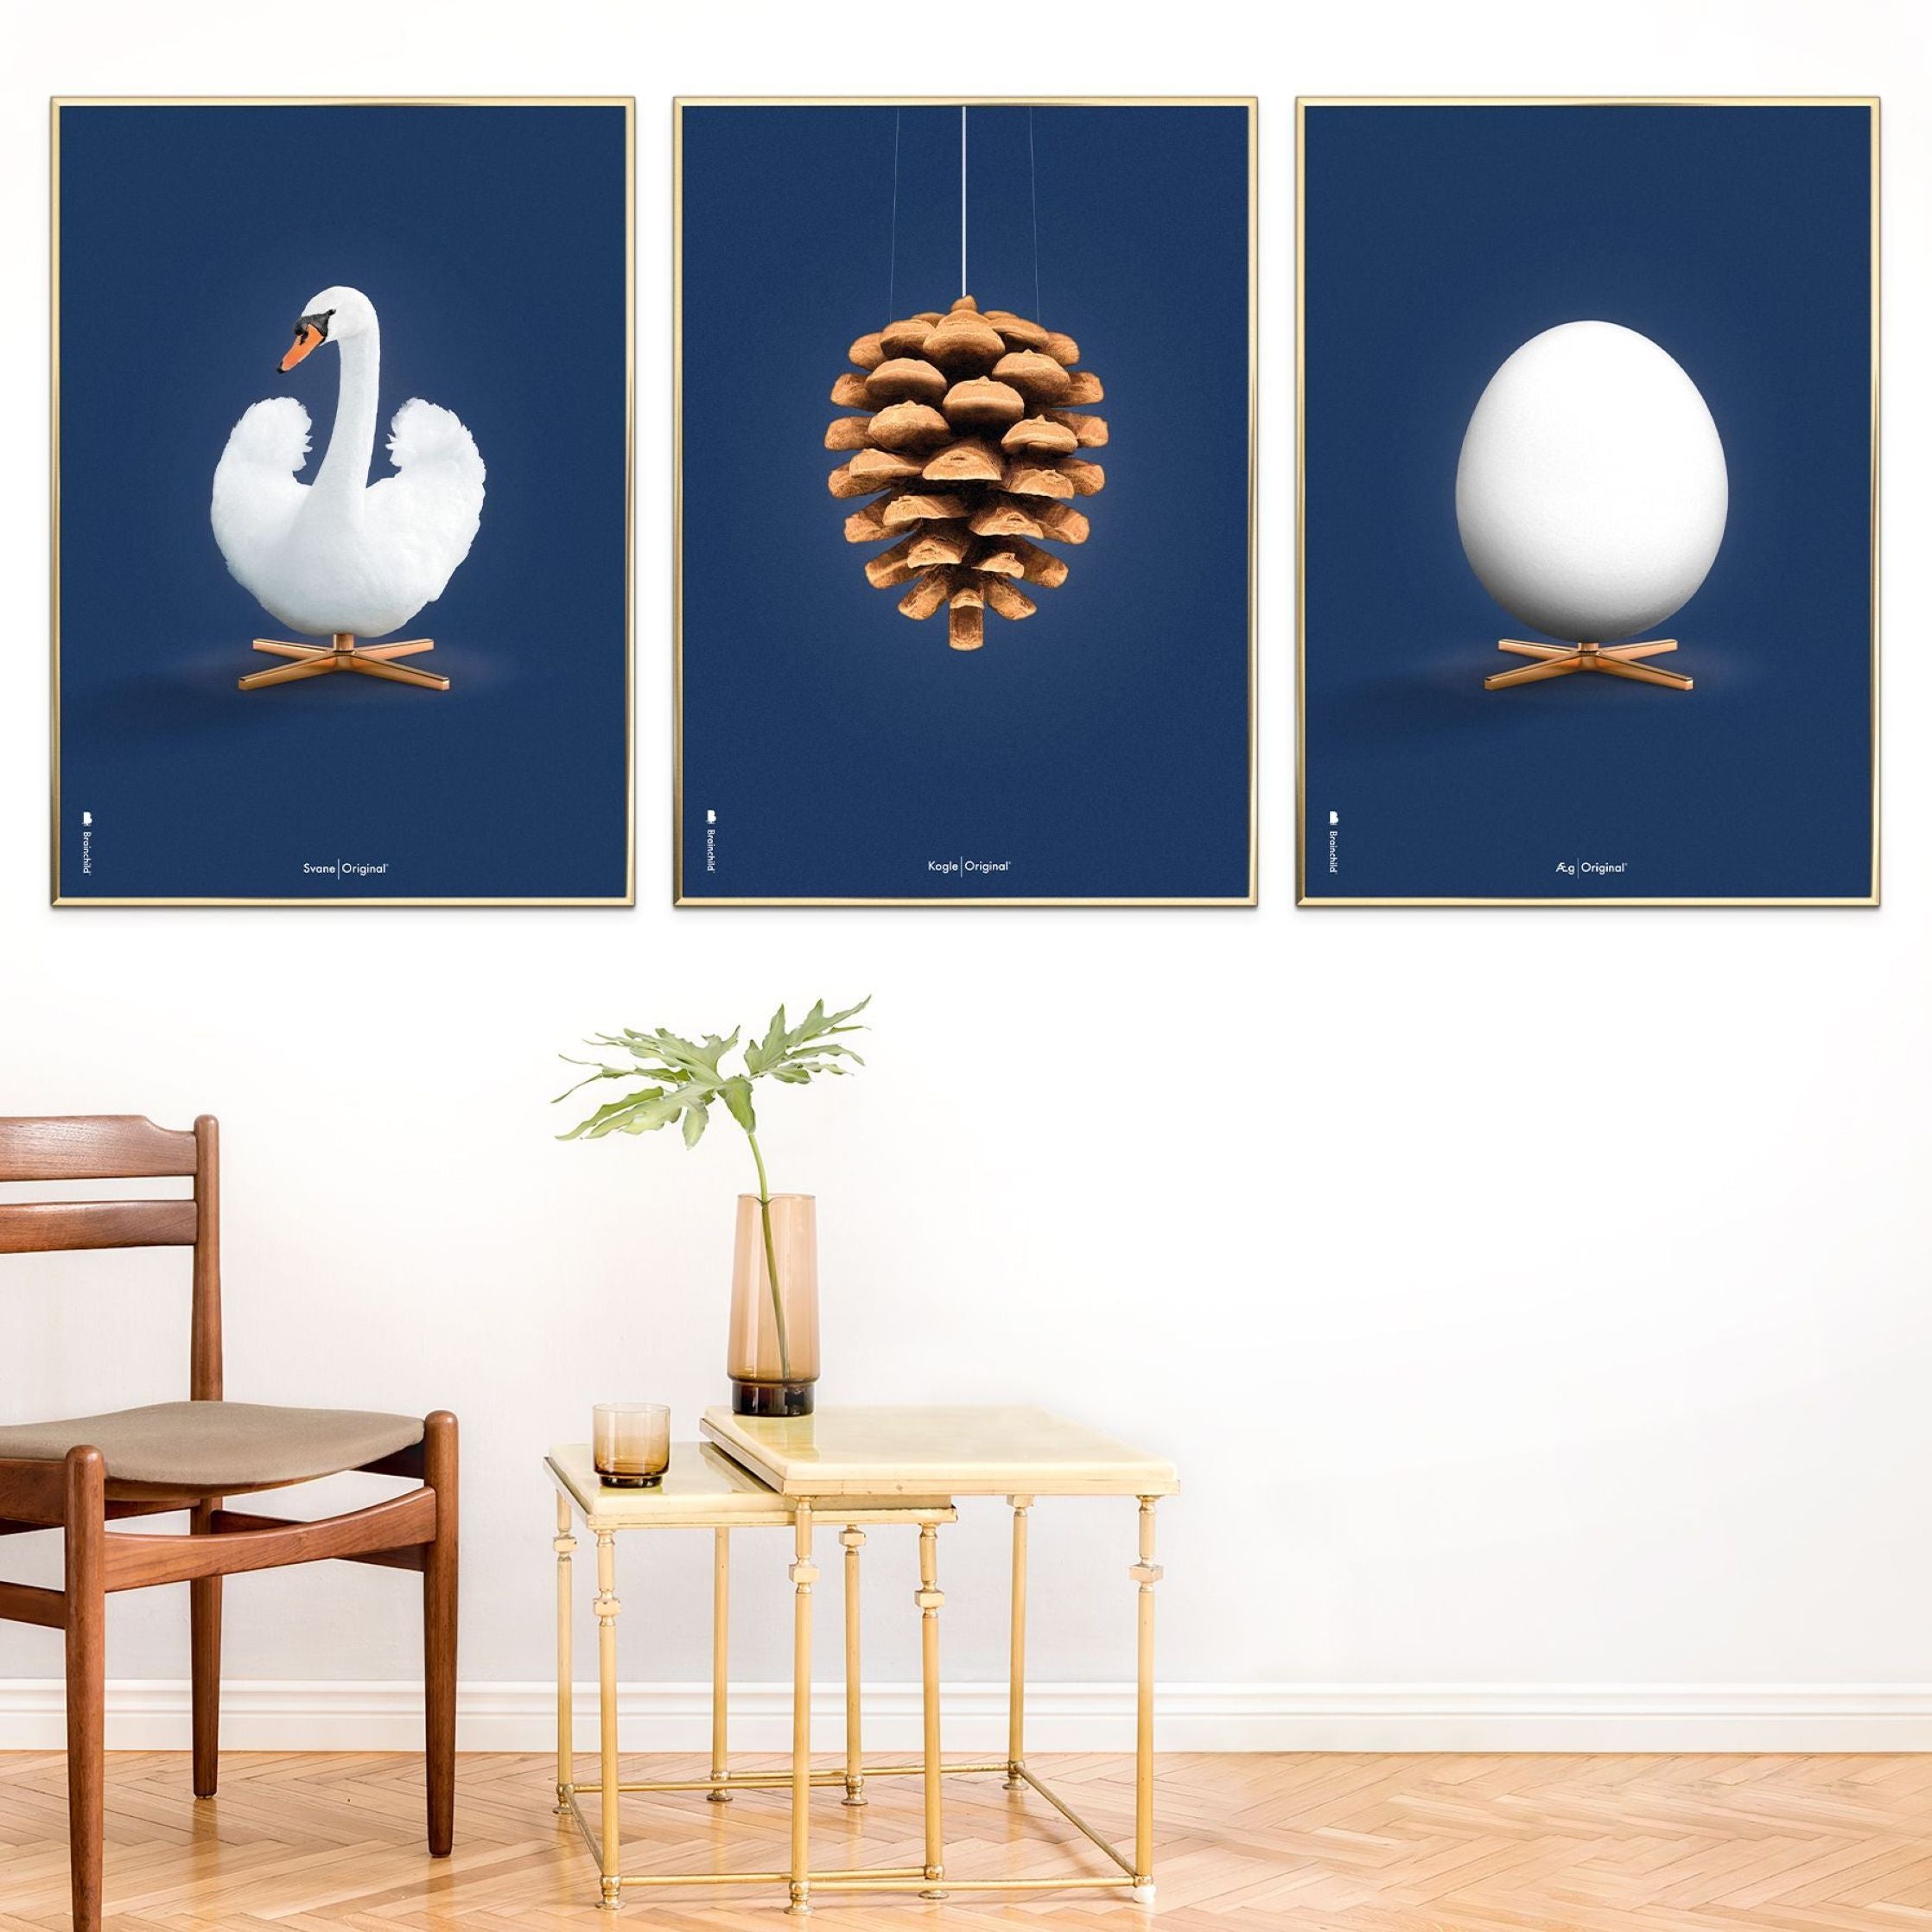 Brainchild Egg Classic Poster ohne Rahmen 50 X70 cm, dunkelblauer Hintergrund